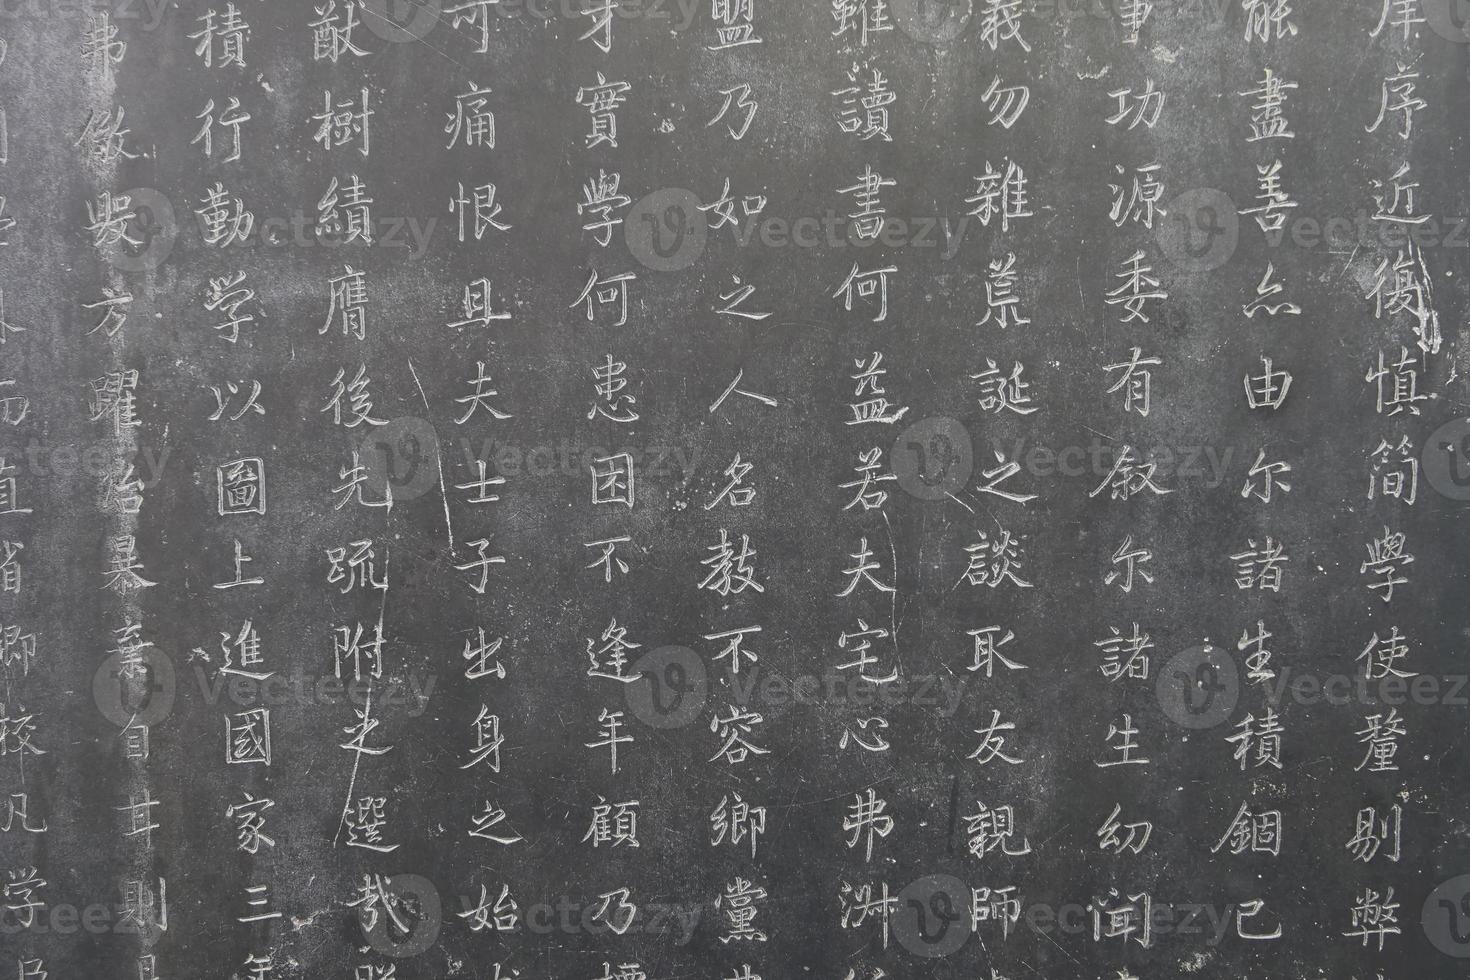 Tabletas de piedra de caligrafía en el bosque de Xian de las estelas de piedra, museo de China foto